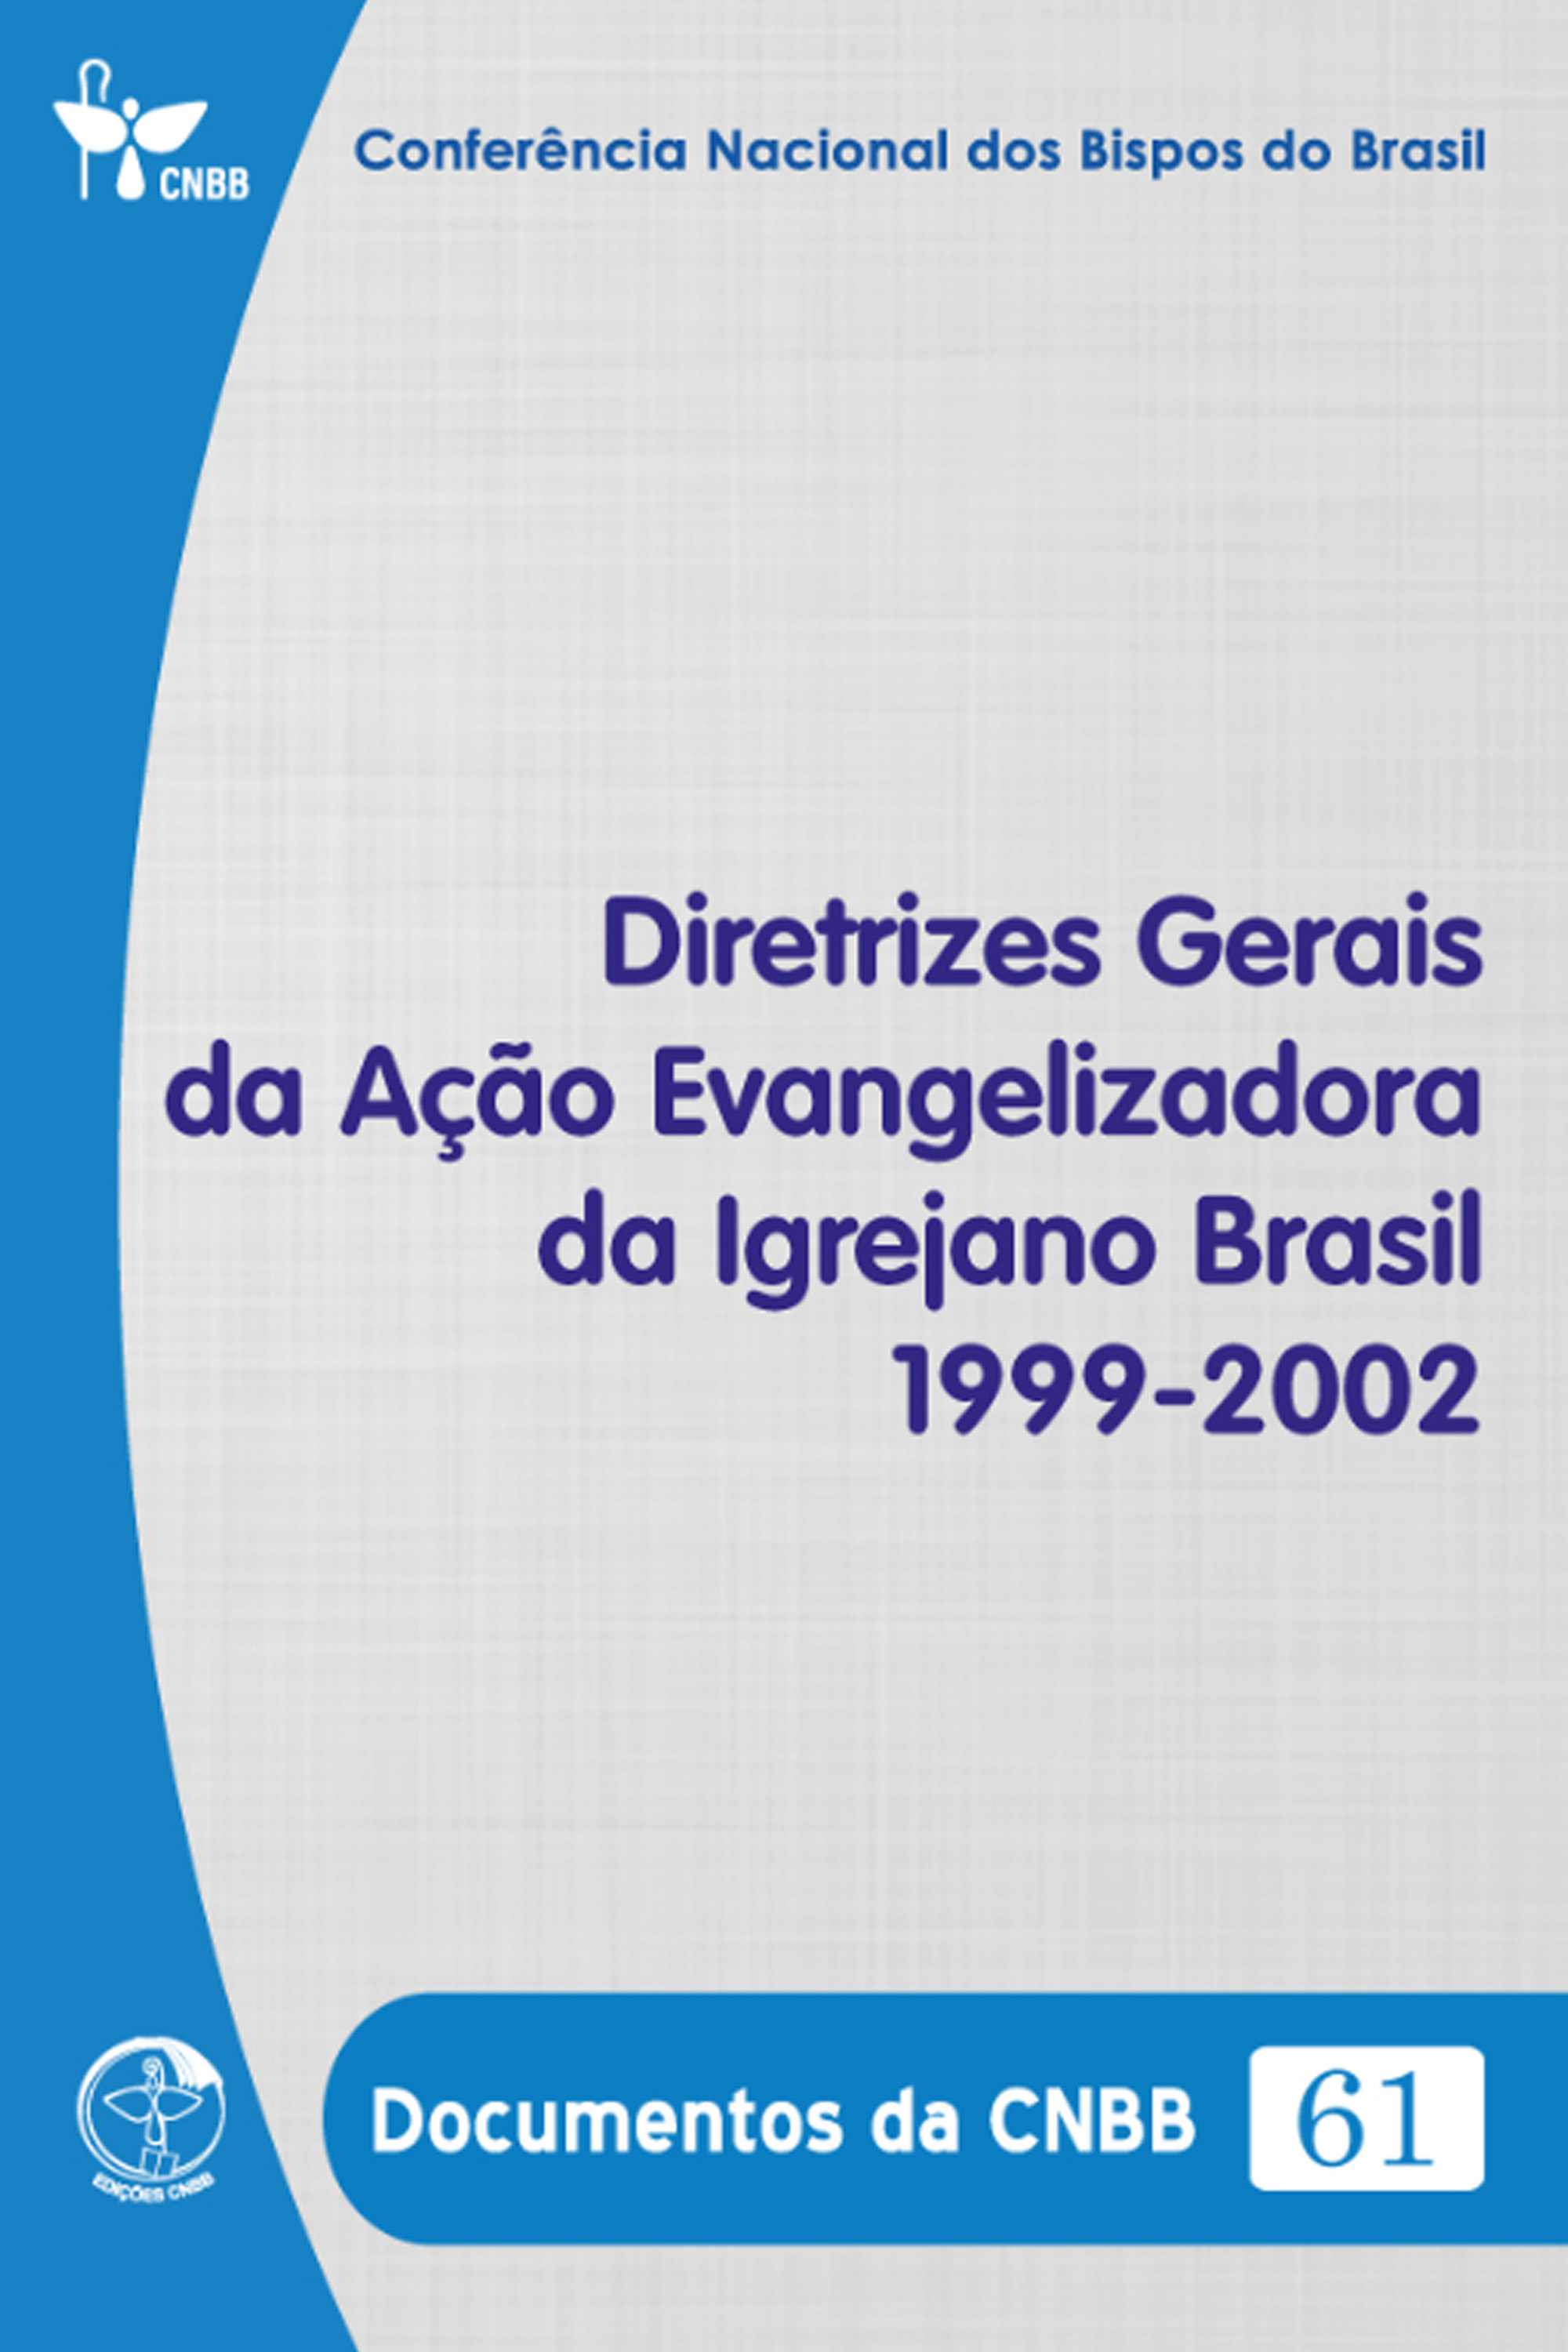 Diretrizes Gerais da Ação Evangelizadora da Igreja no Brasil 1999-2002 - Documentos da CNBB 61 - Digital